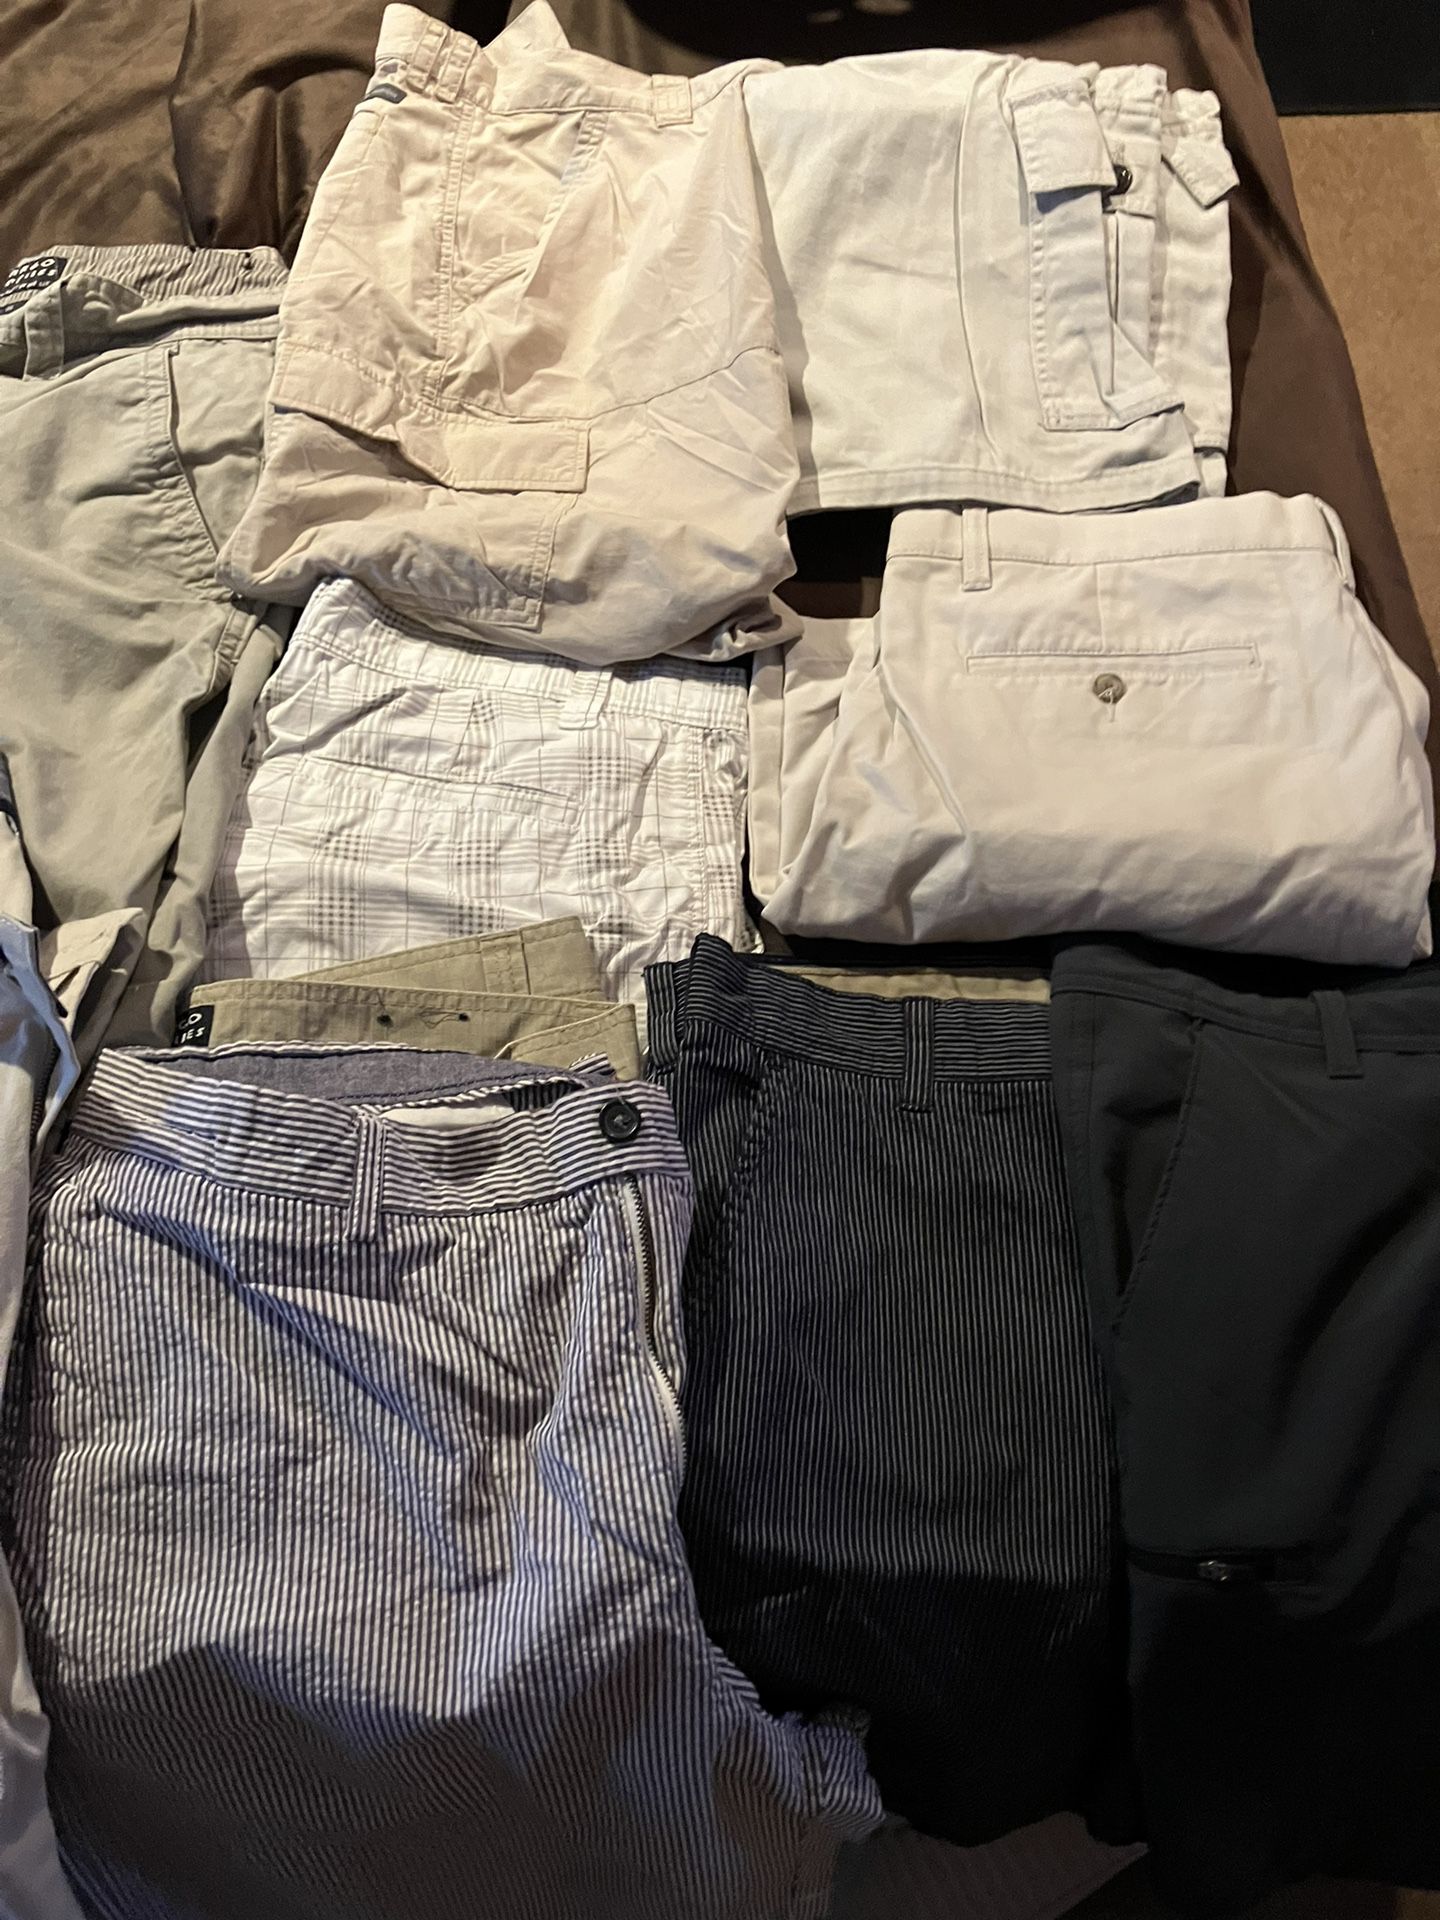 Men’s sz 36 Waist Cargo/ Reg Shorts!Shirts/adidas Jacket L